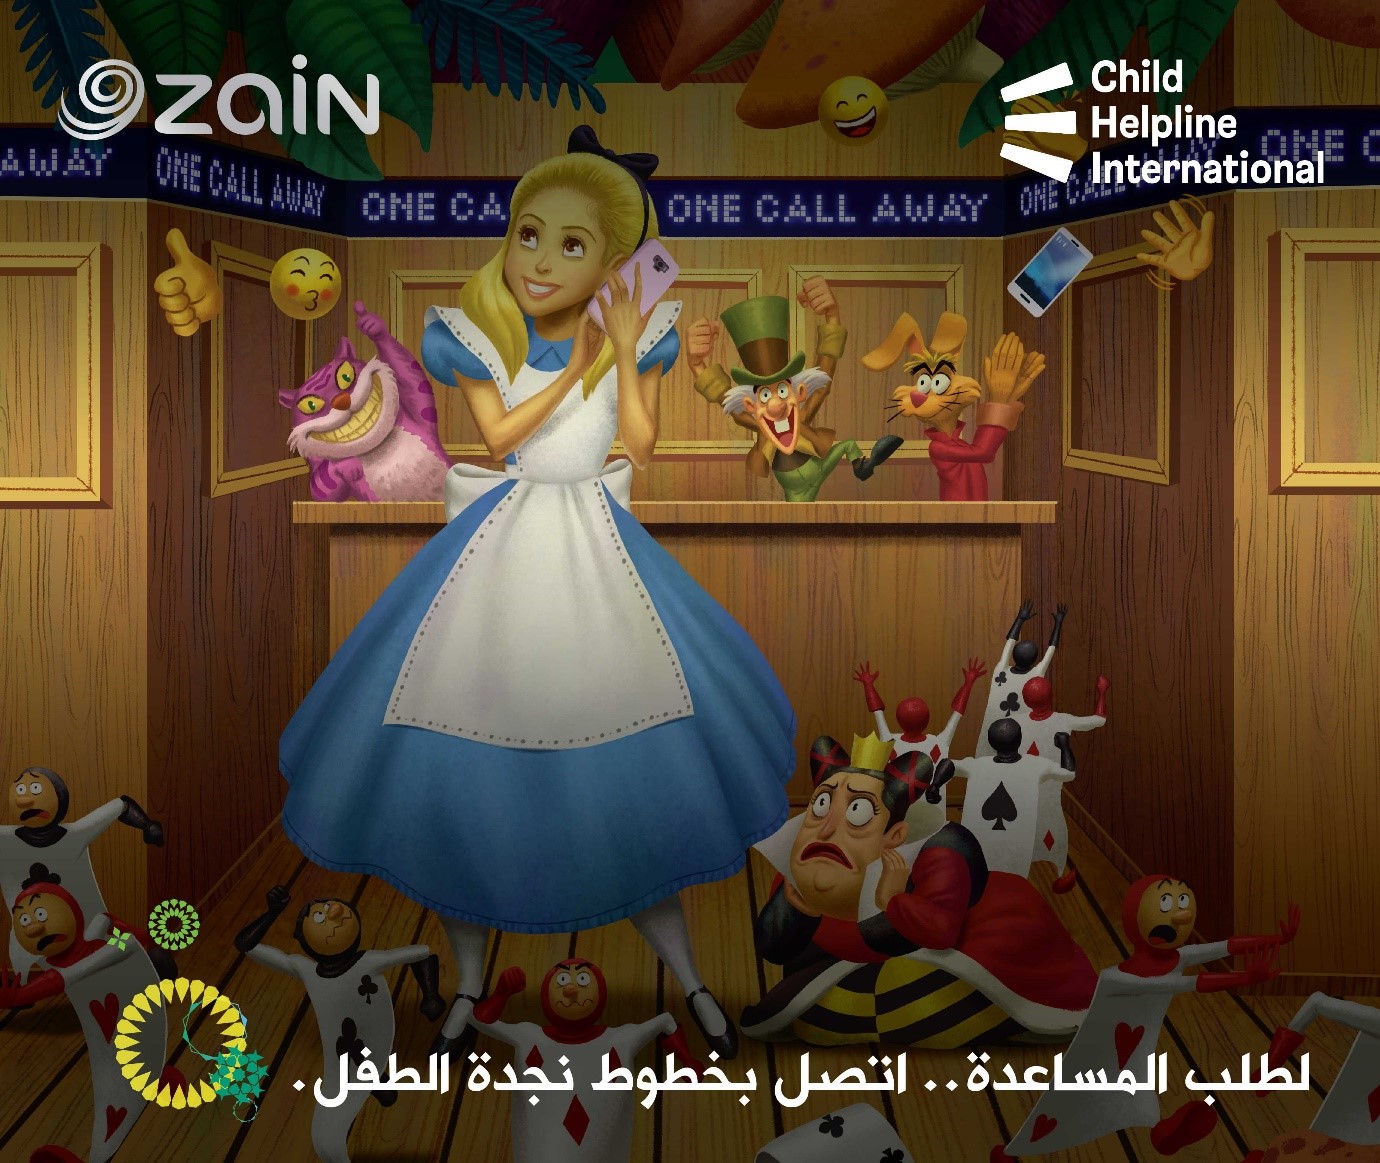 "زين" تطلق النسخة الثانية من حملة "وحوش الإنترنت" بالتزامن مع الاحتفال باليوم العالمي للطفل